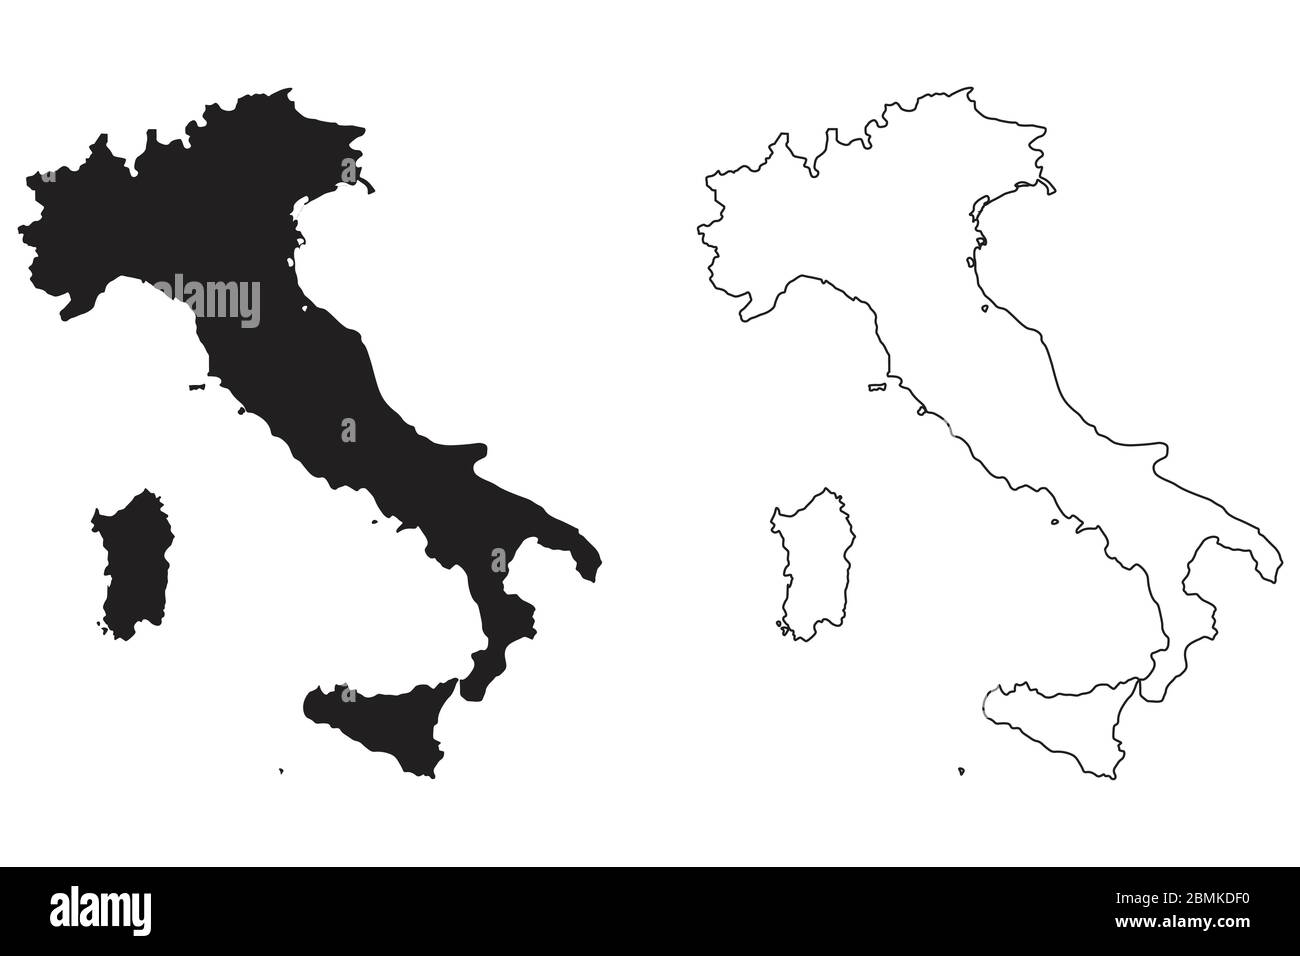 Mappa Paese Italia. Silhouette e profilo neri isolati su sfondo bianco. Vettore EPS Illustrazione Vettoriale